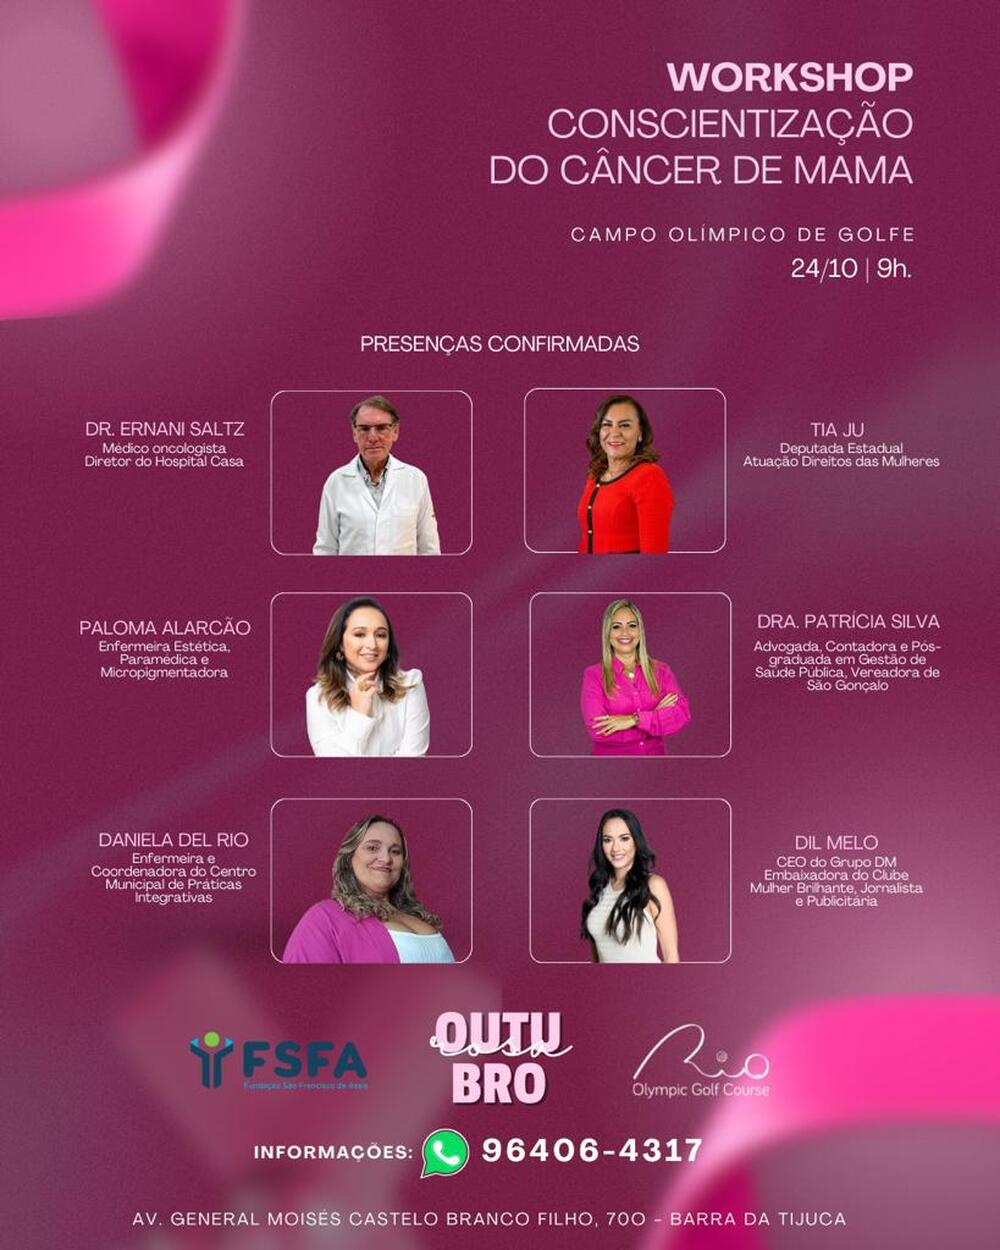 Evento de conscientização sobre o câncer de mama reunirá especialistas e autoridades no Golf Olímpico 